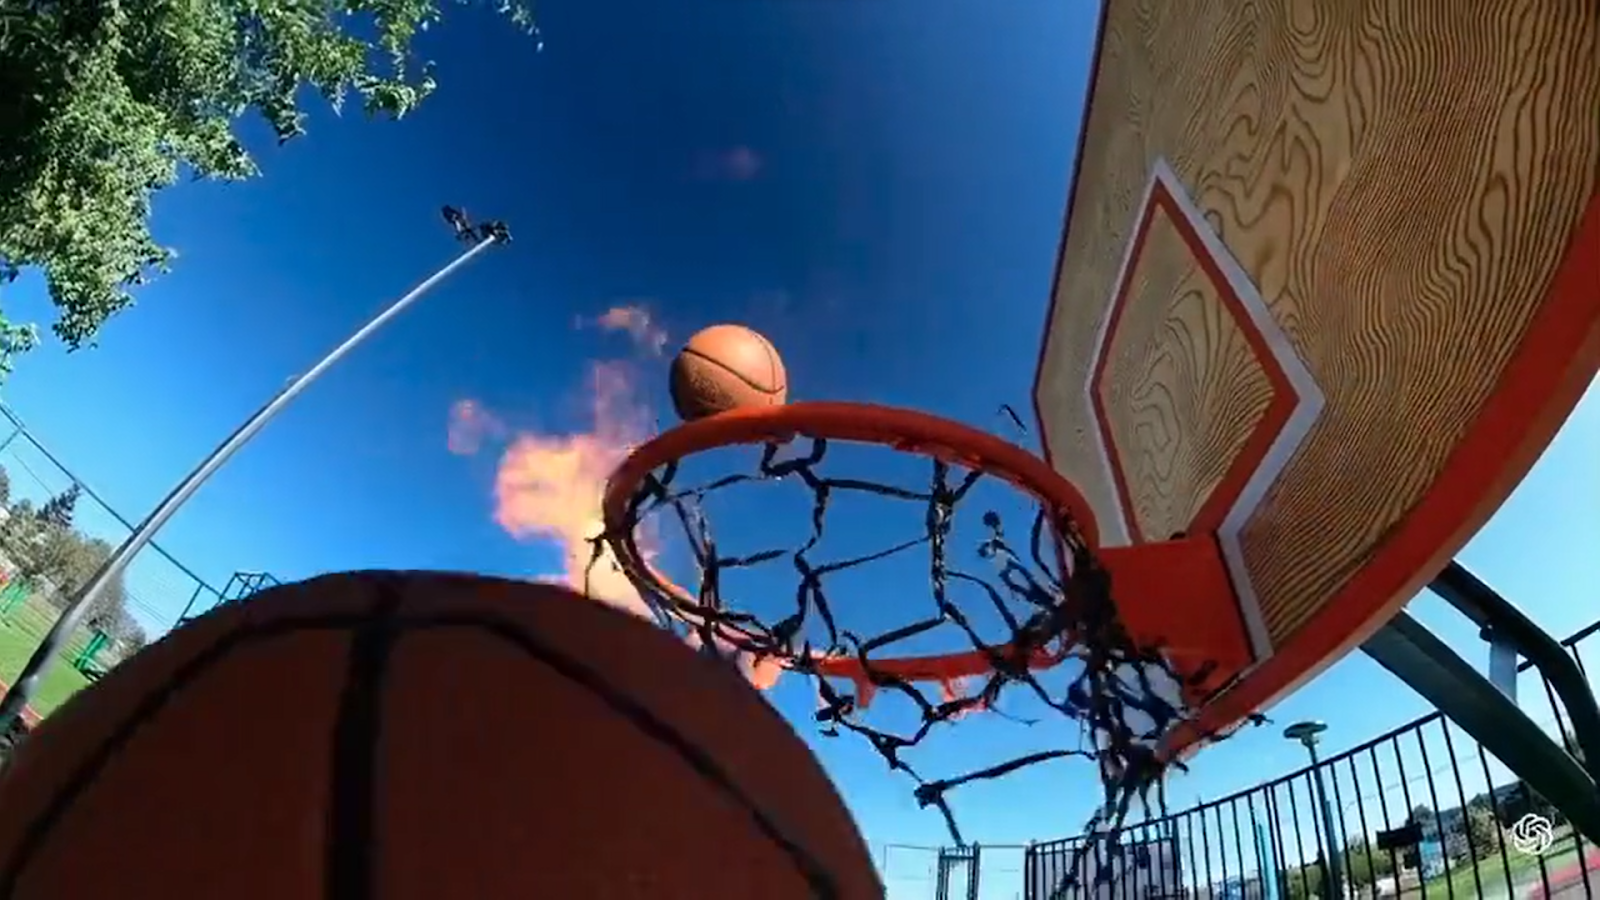 Een basketbalhoepel met een bal in de luchtBeschrijving automatisch gegenereerd